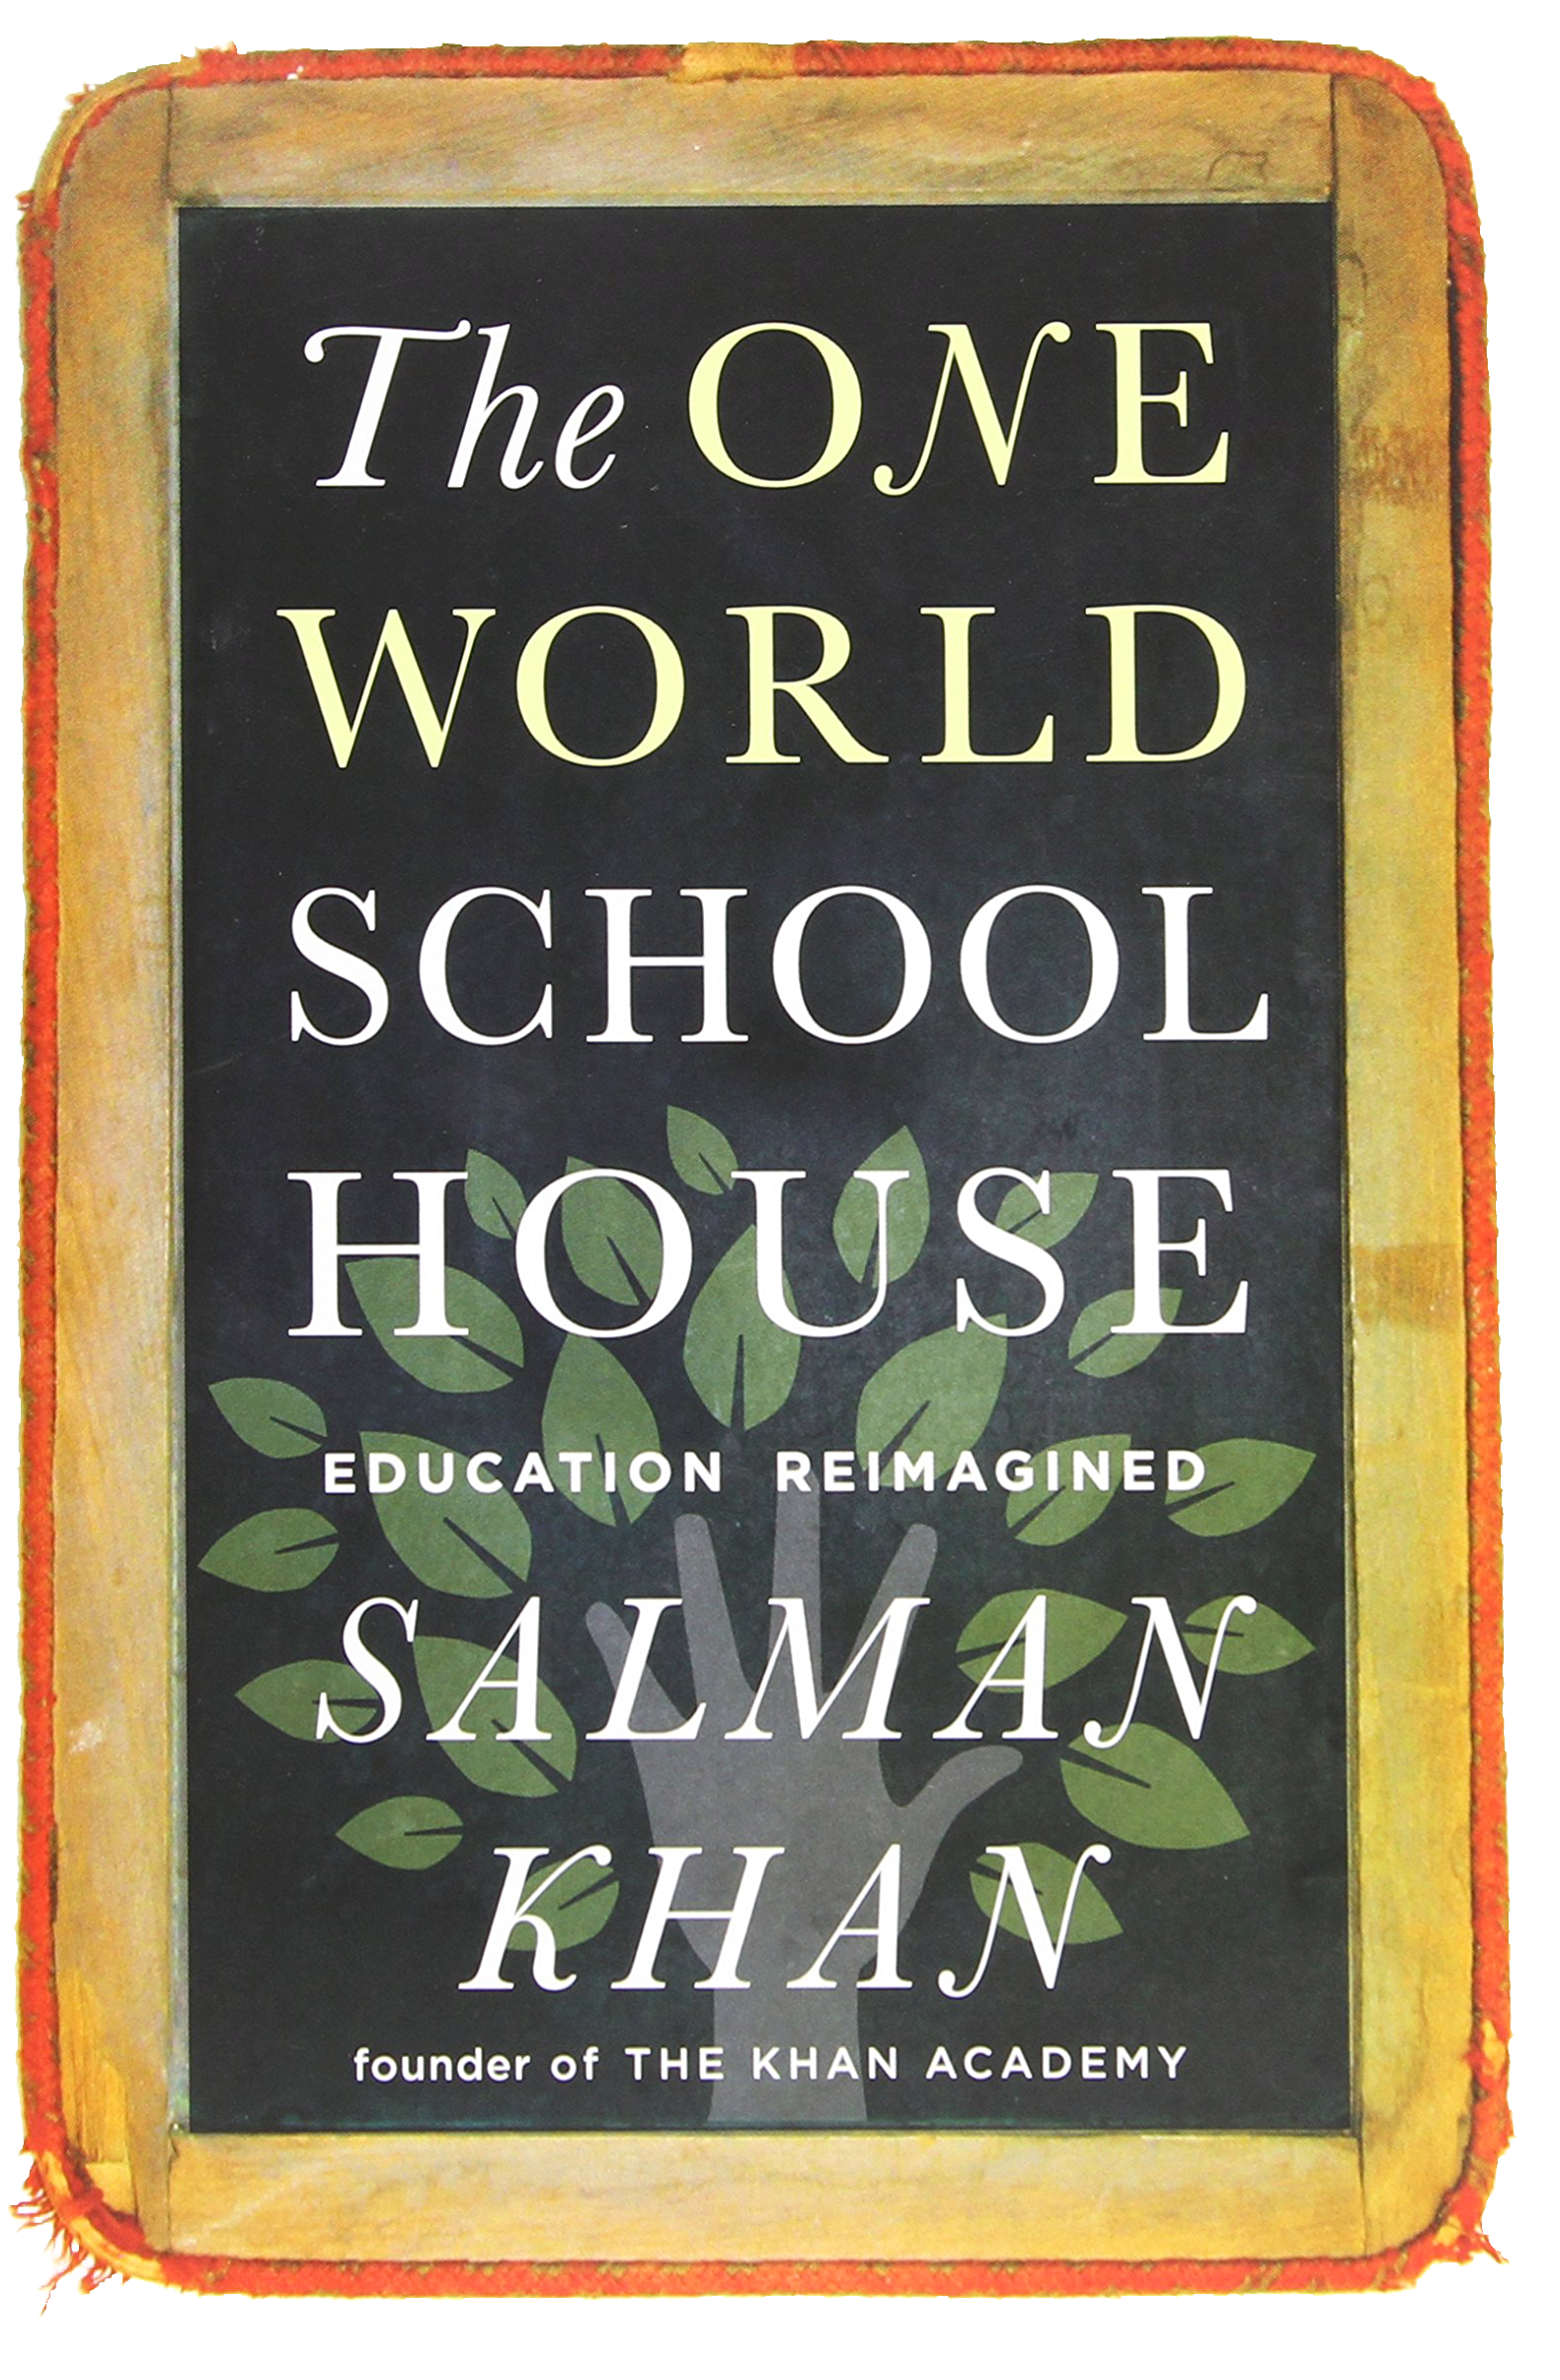 Khan's book